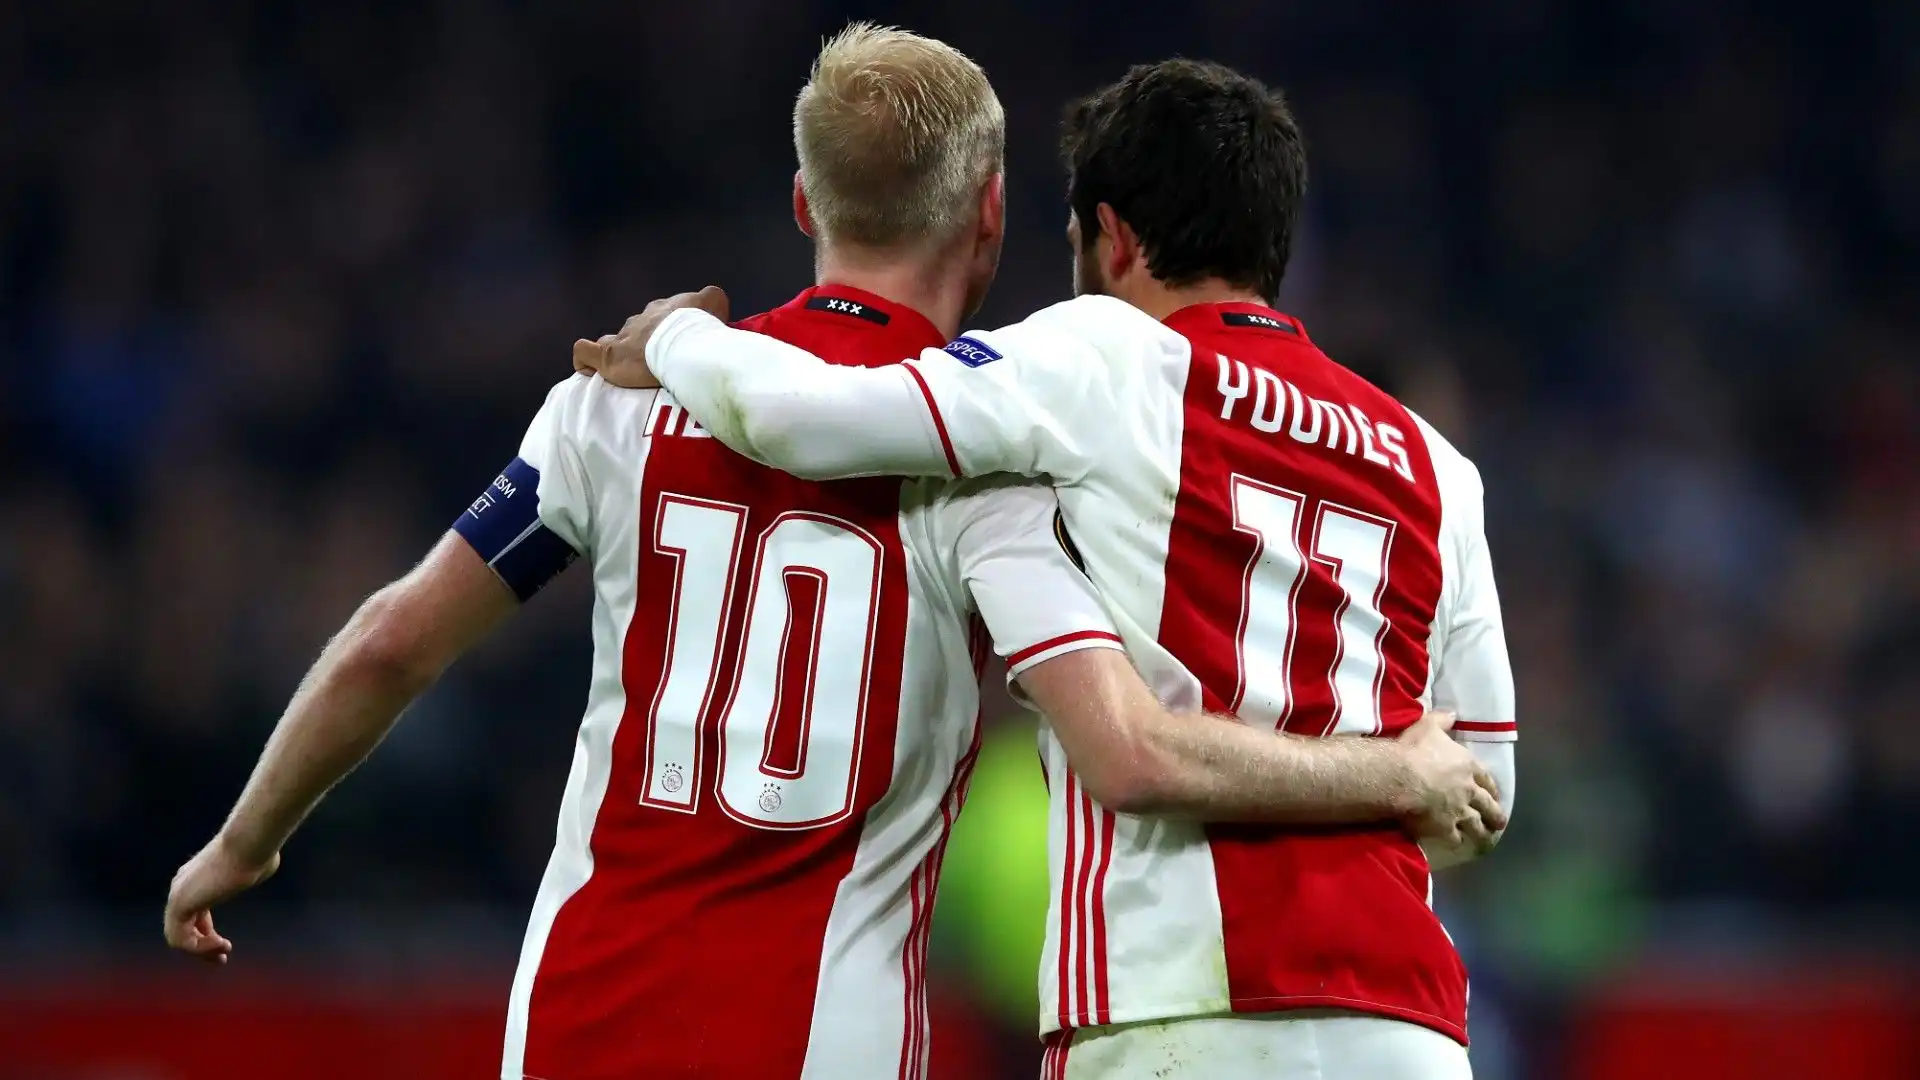 Prima di trasferirsi in Italia, Younes ha giocato 3 anni all'Ajax